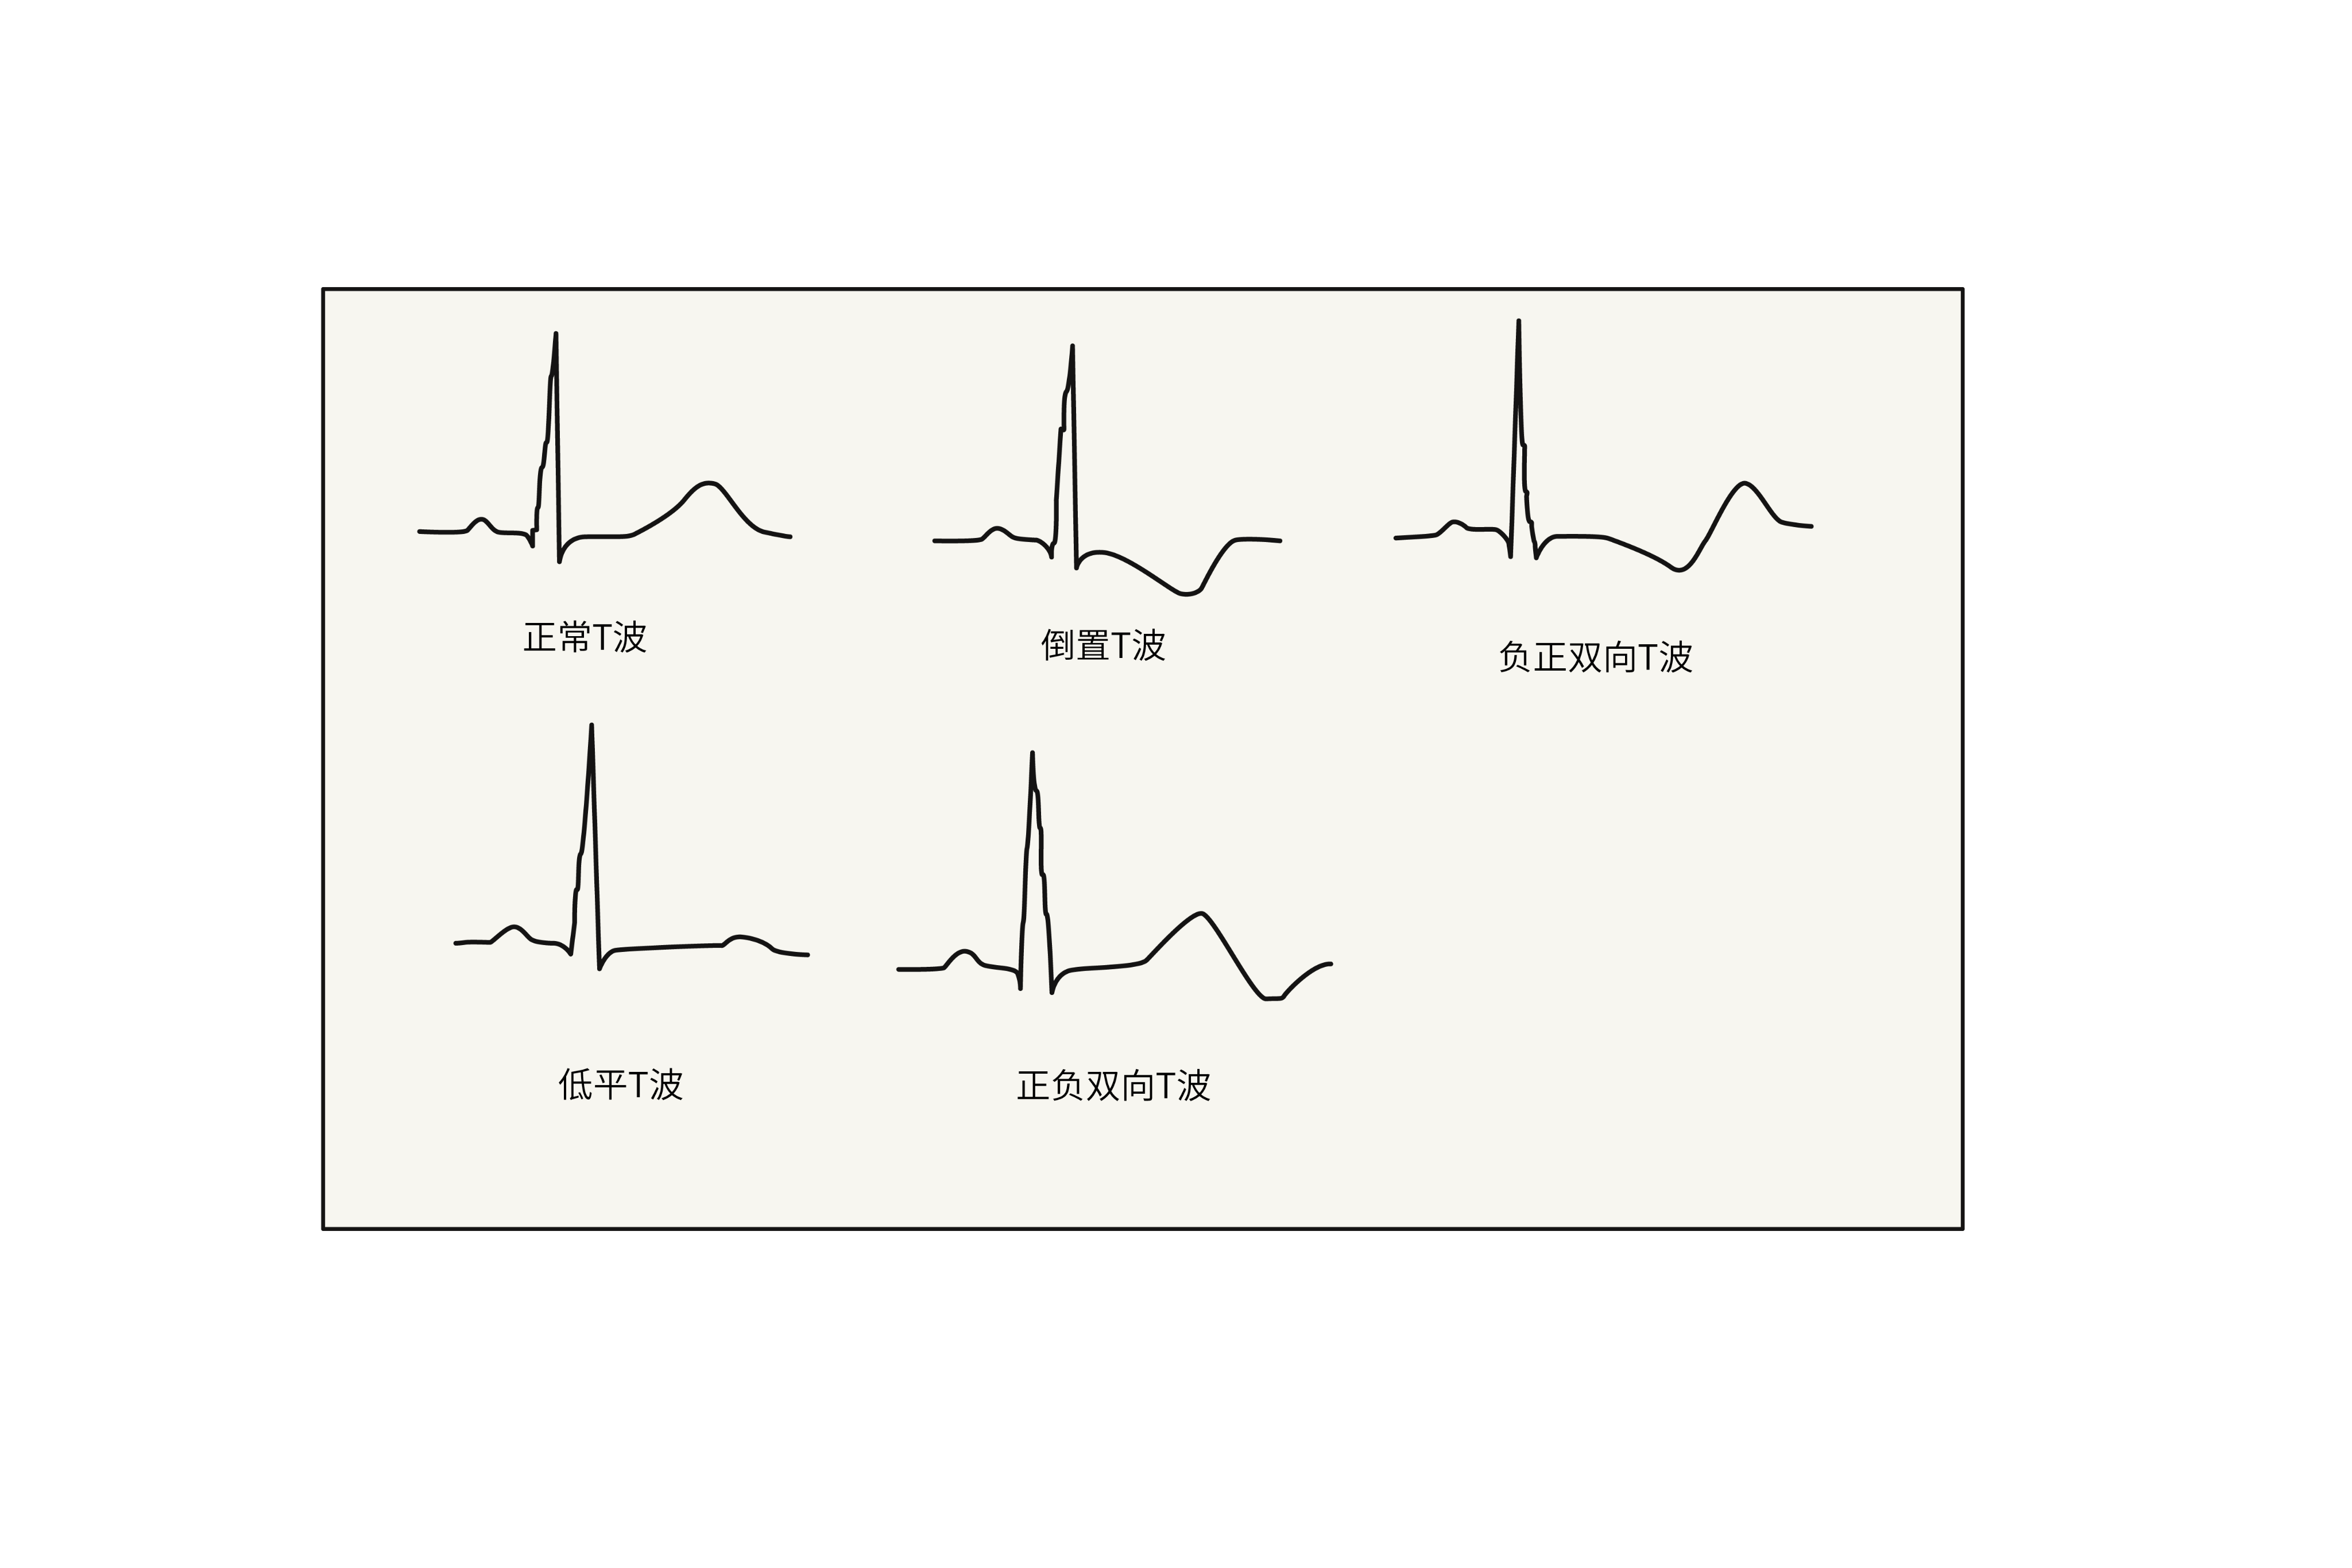 心电图下壁t波异常是什么意思